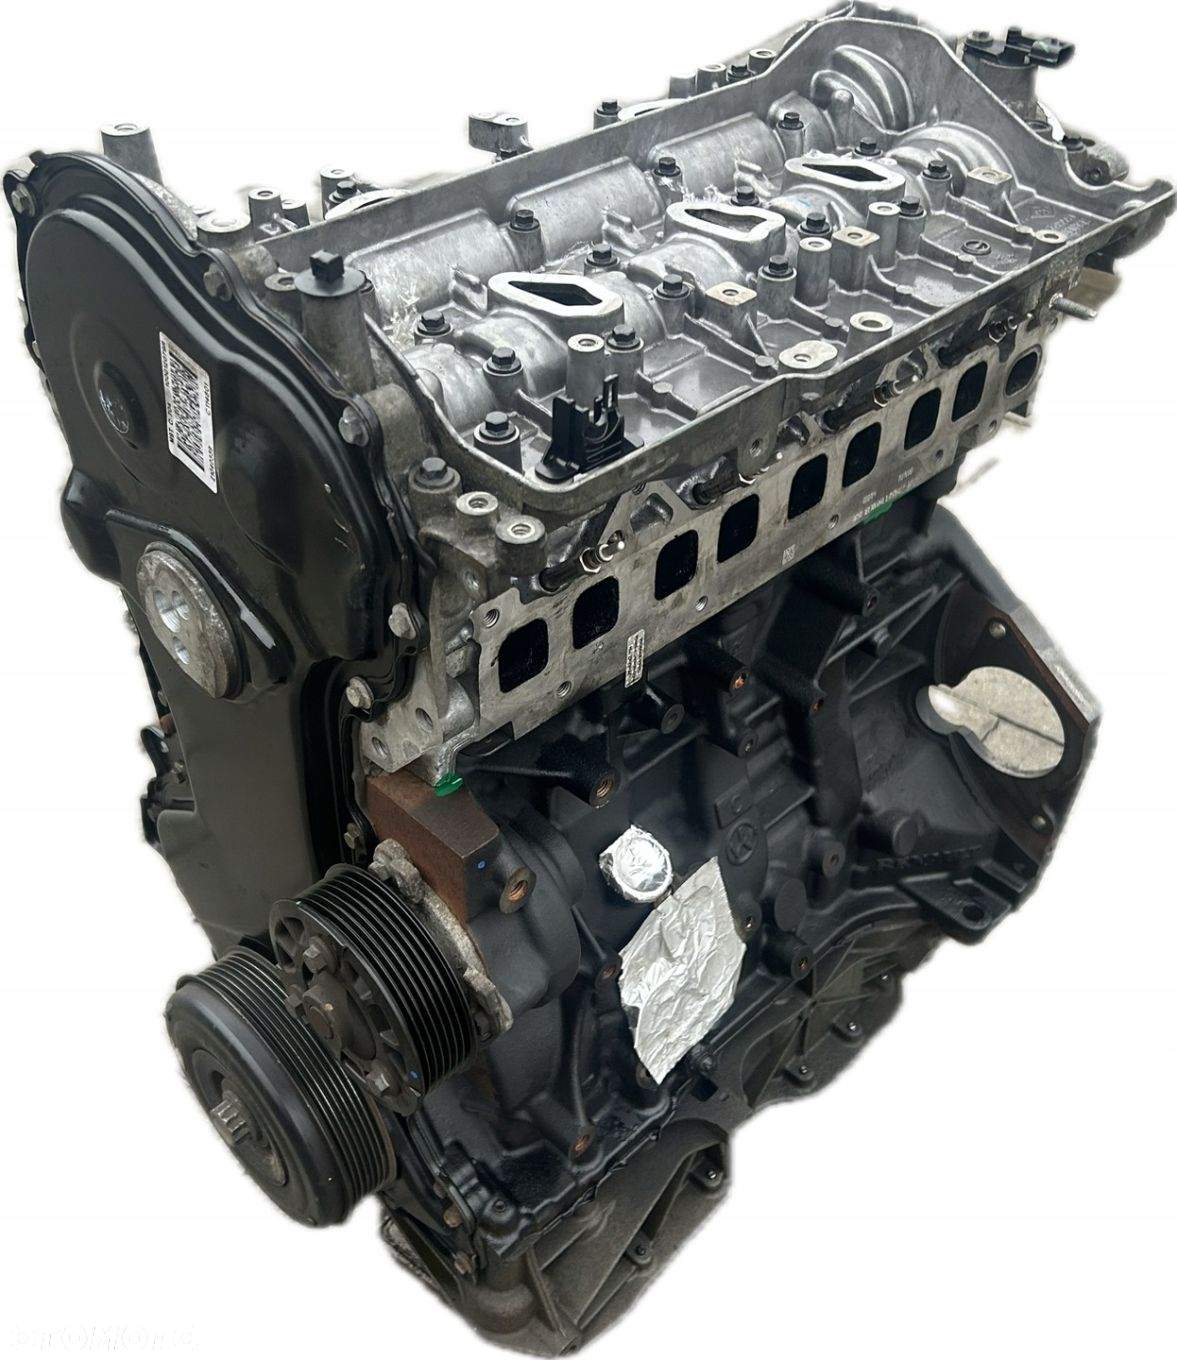 SILNIK 2.3 DCI Nissan NV 400 M9T C704 Biturbo Bi-turbo Napęd przód 2015-20r - 8